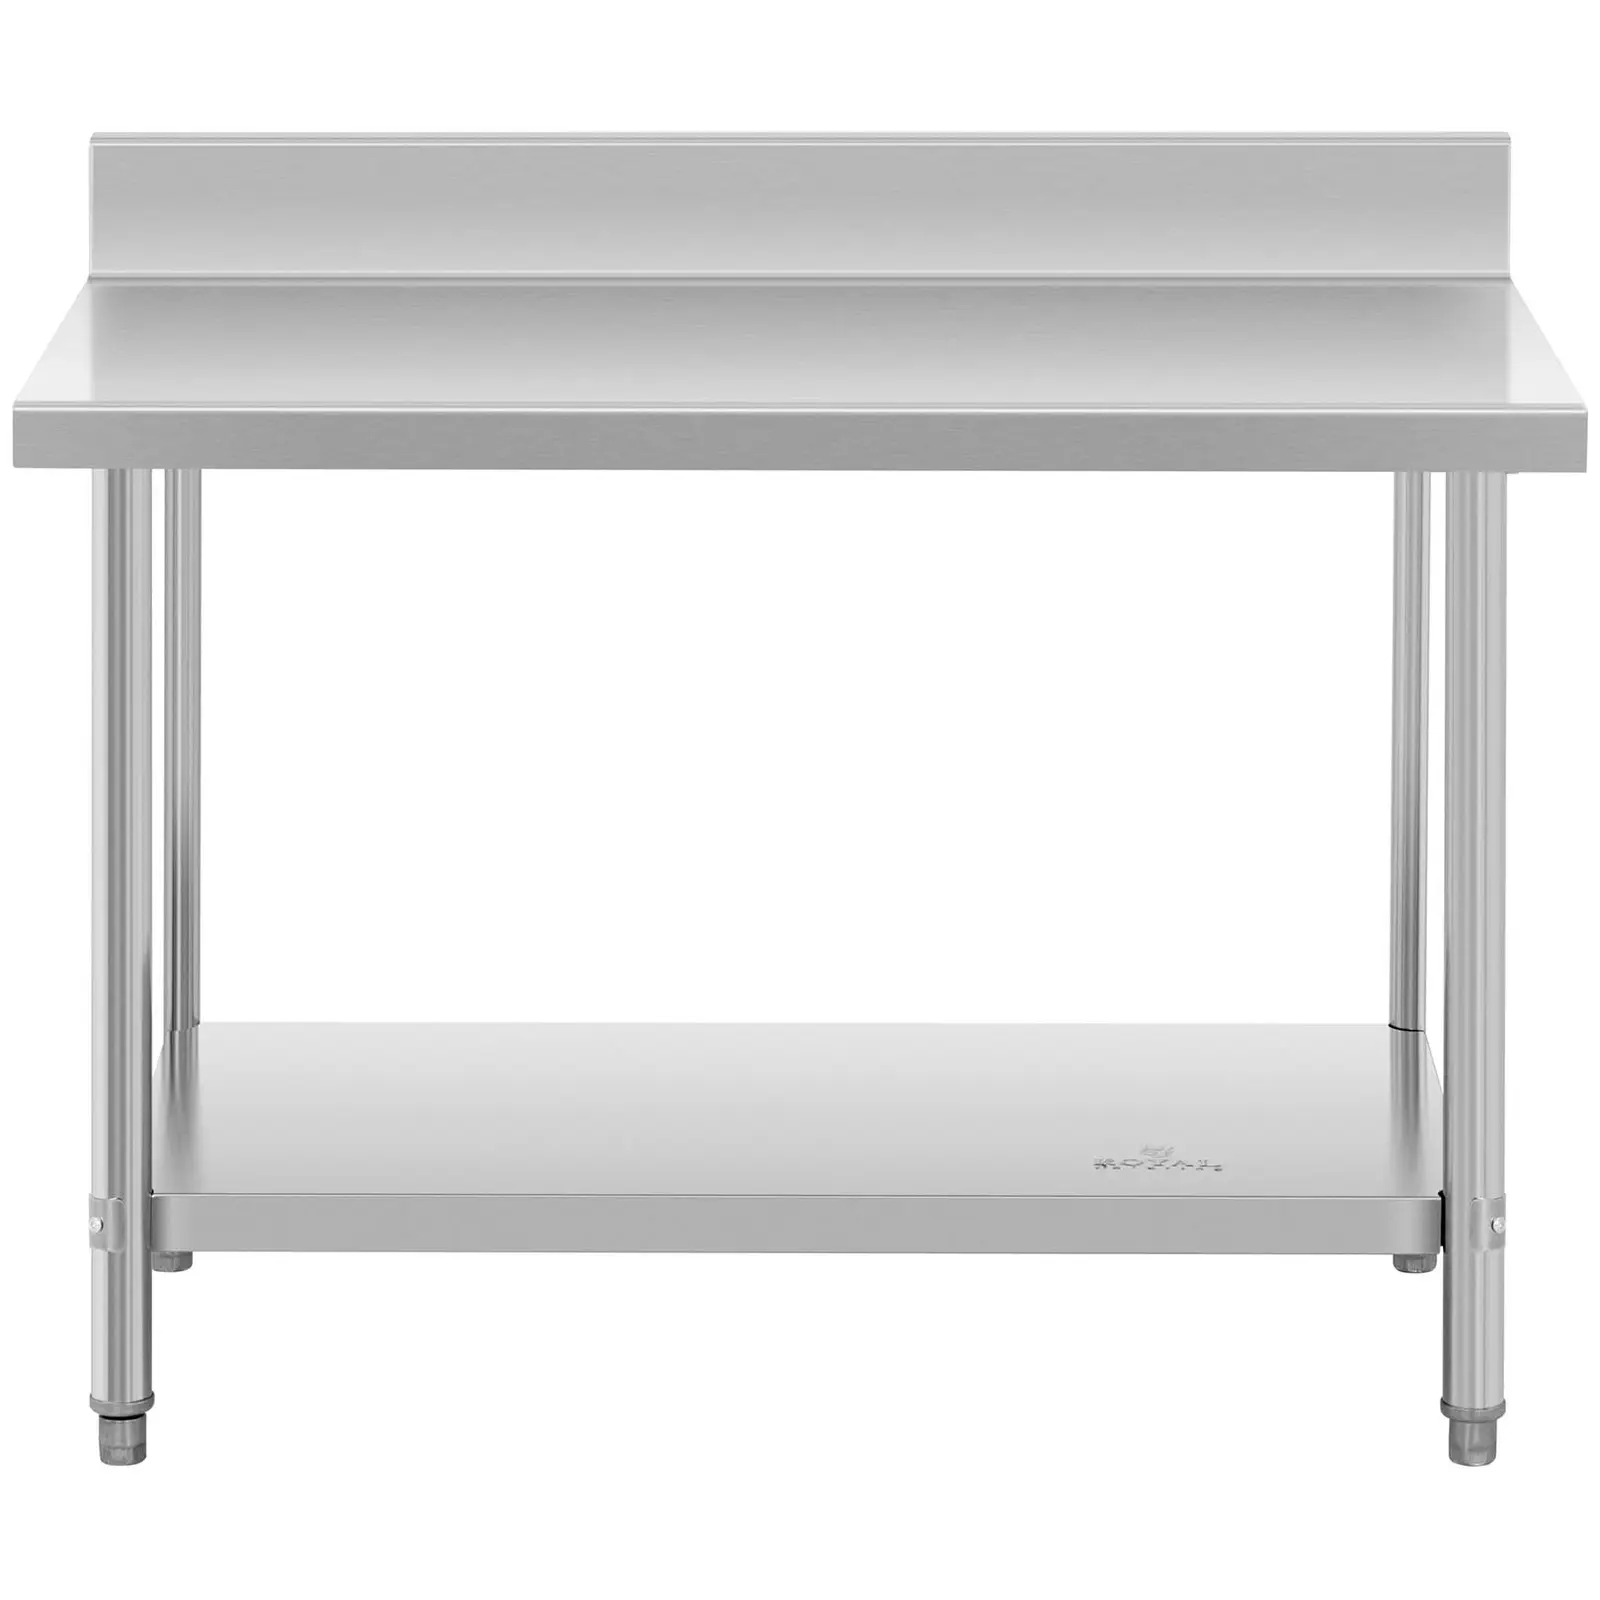 Pracovný stôl z nehrdzavejúcej ocele -lem - 120 x 70 cm - nosnosť 196 kg